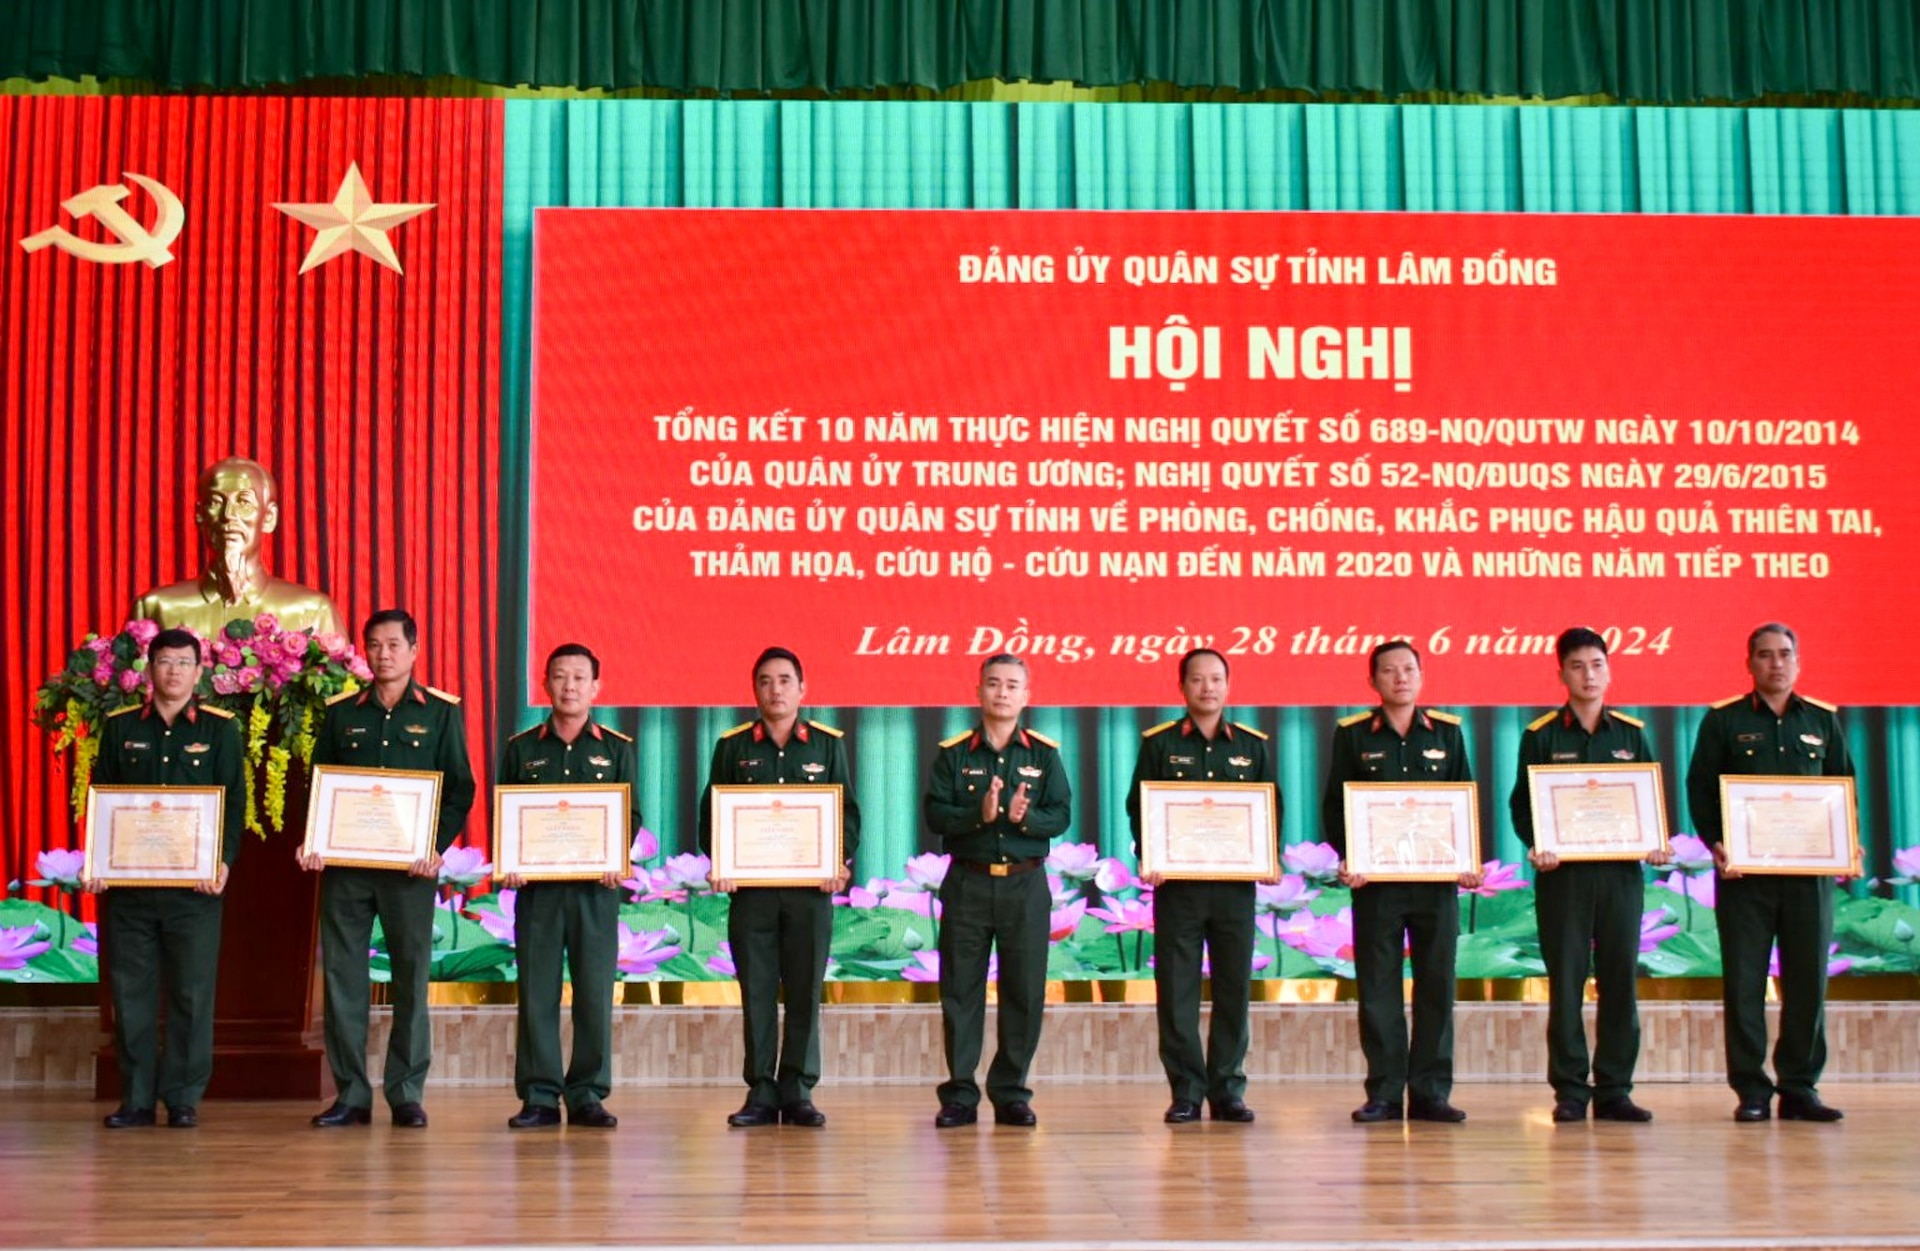 Khen thưởng các cá nhân có thành tích trong 10 năm thực hiện Nghị quyết 689 của Quân ủy Trung ương, Nghị quyết số 2330 của Đảng ủy Quân khu và Nghị quyết số 52 của Đảng ủy Quân sự tỉnh